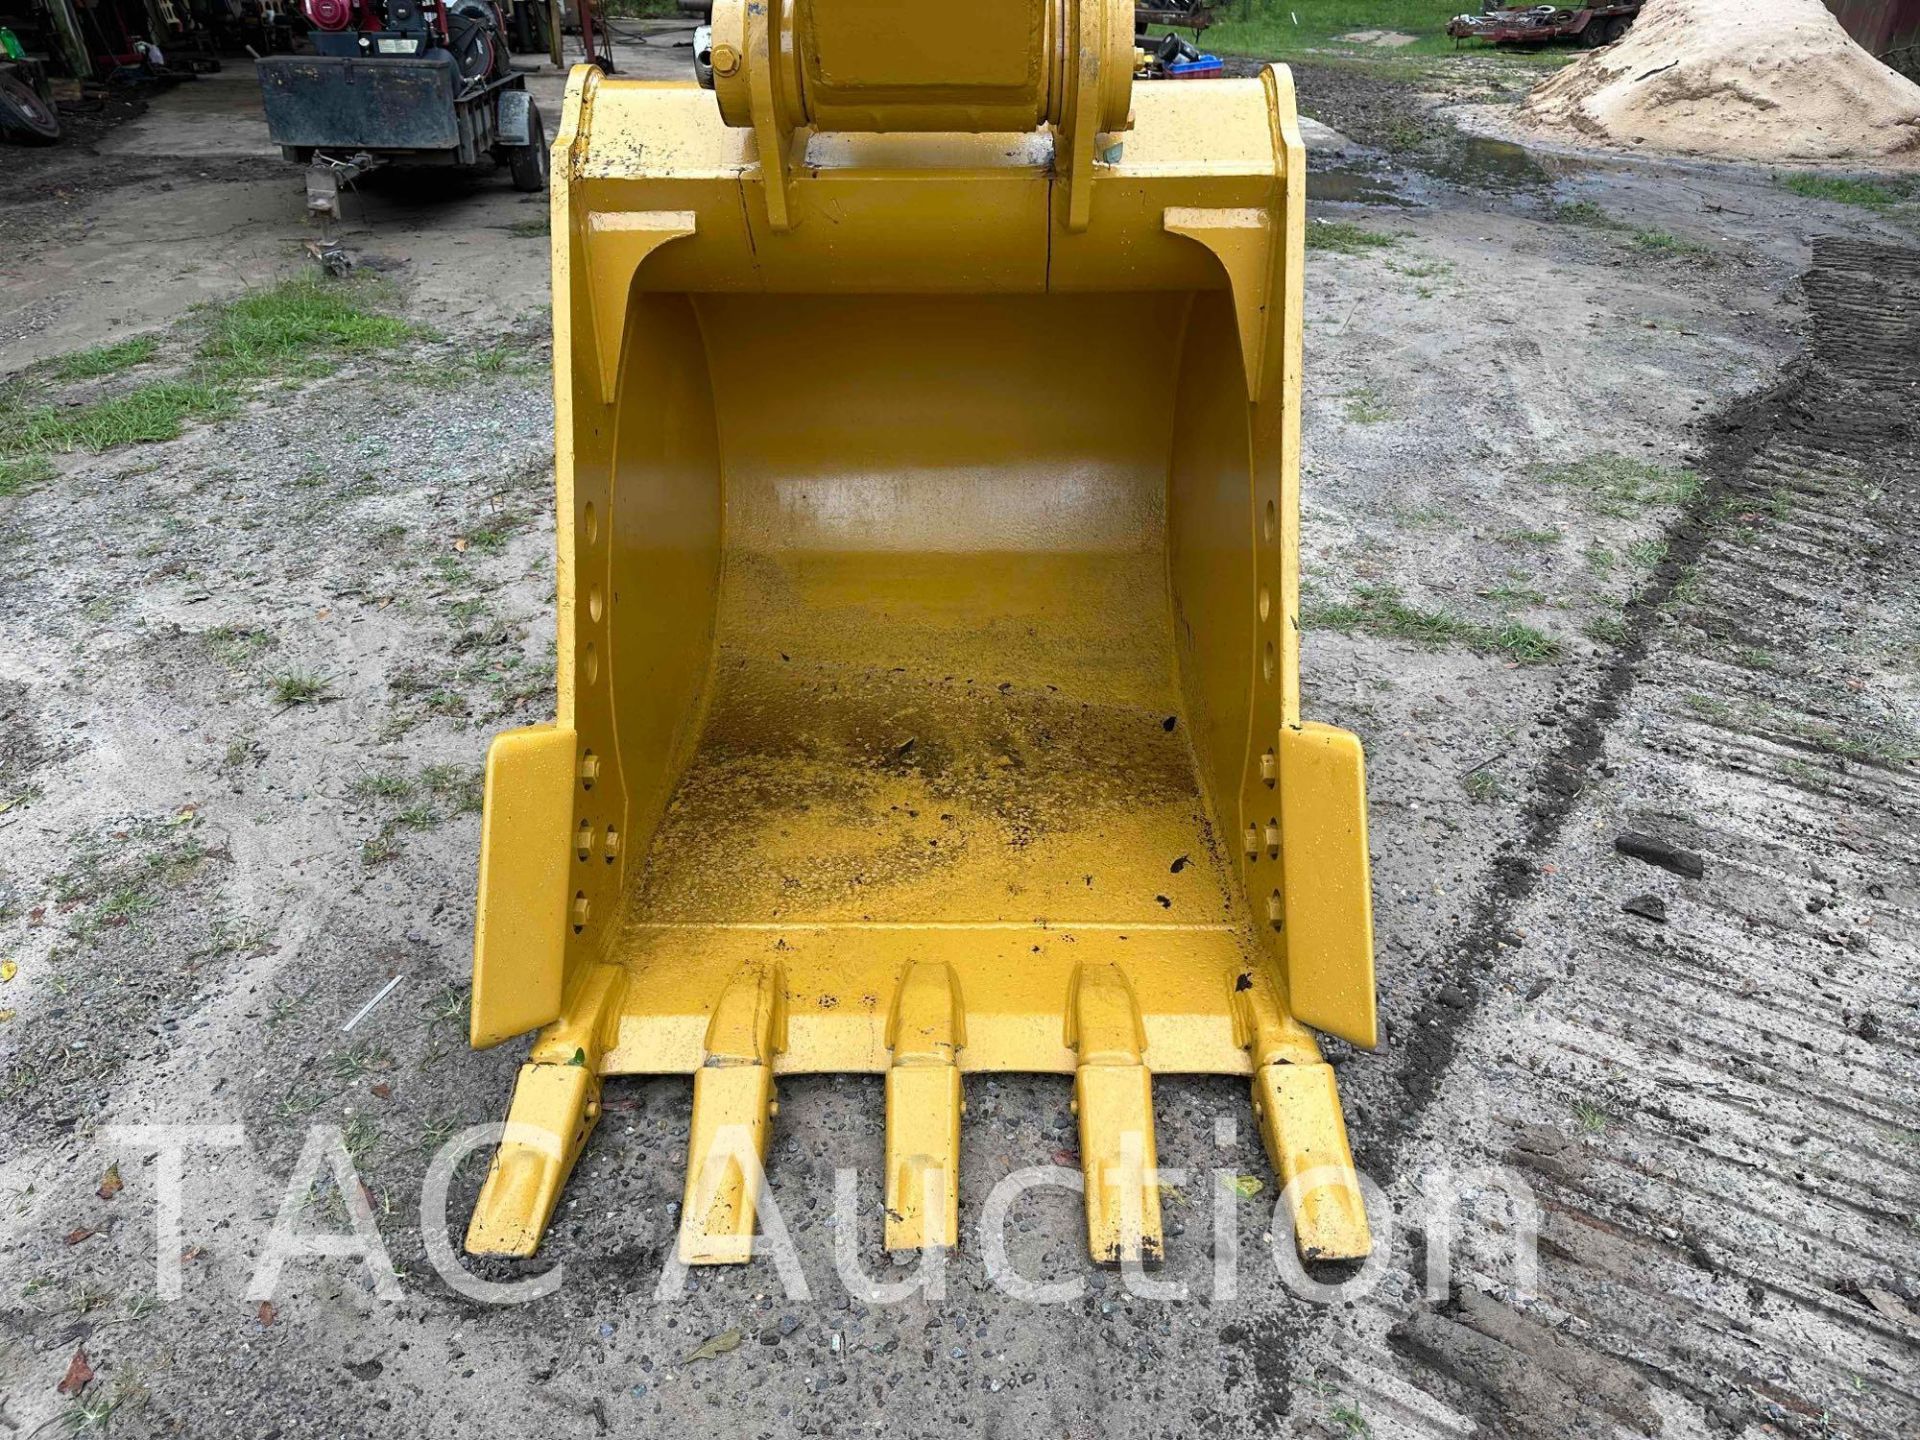 2018 CAT 320 Hydraulic Excavator - Image 10 of 82